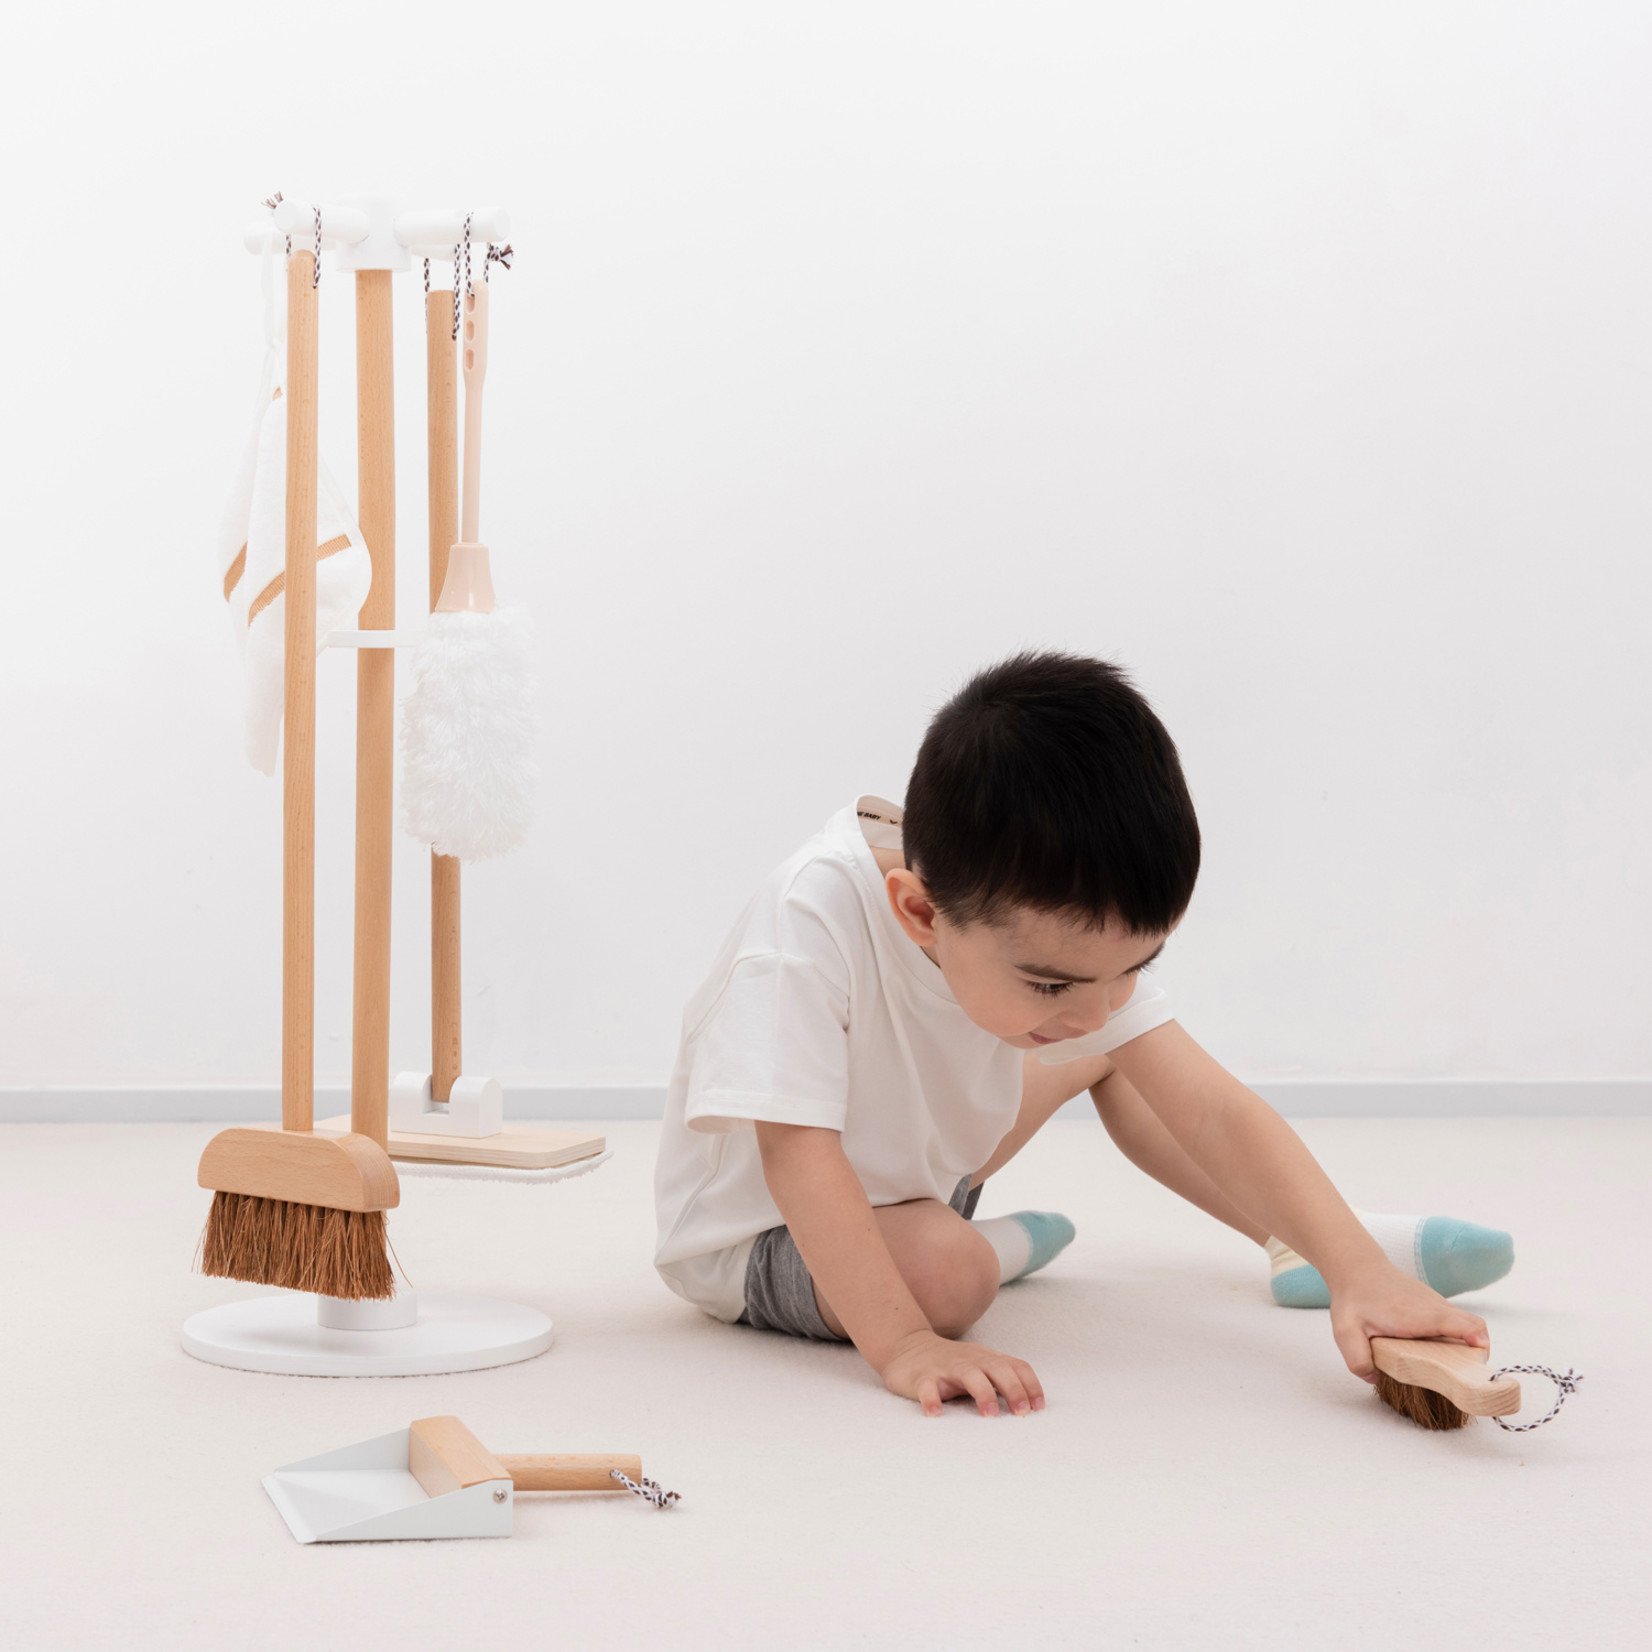 Tranen Snikken begroting New Classic Toys - Houten Schoonmaak Set - COCON